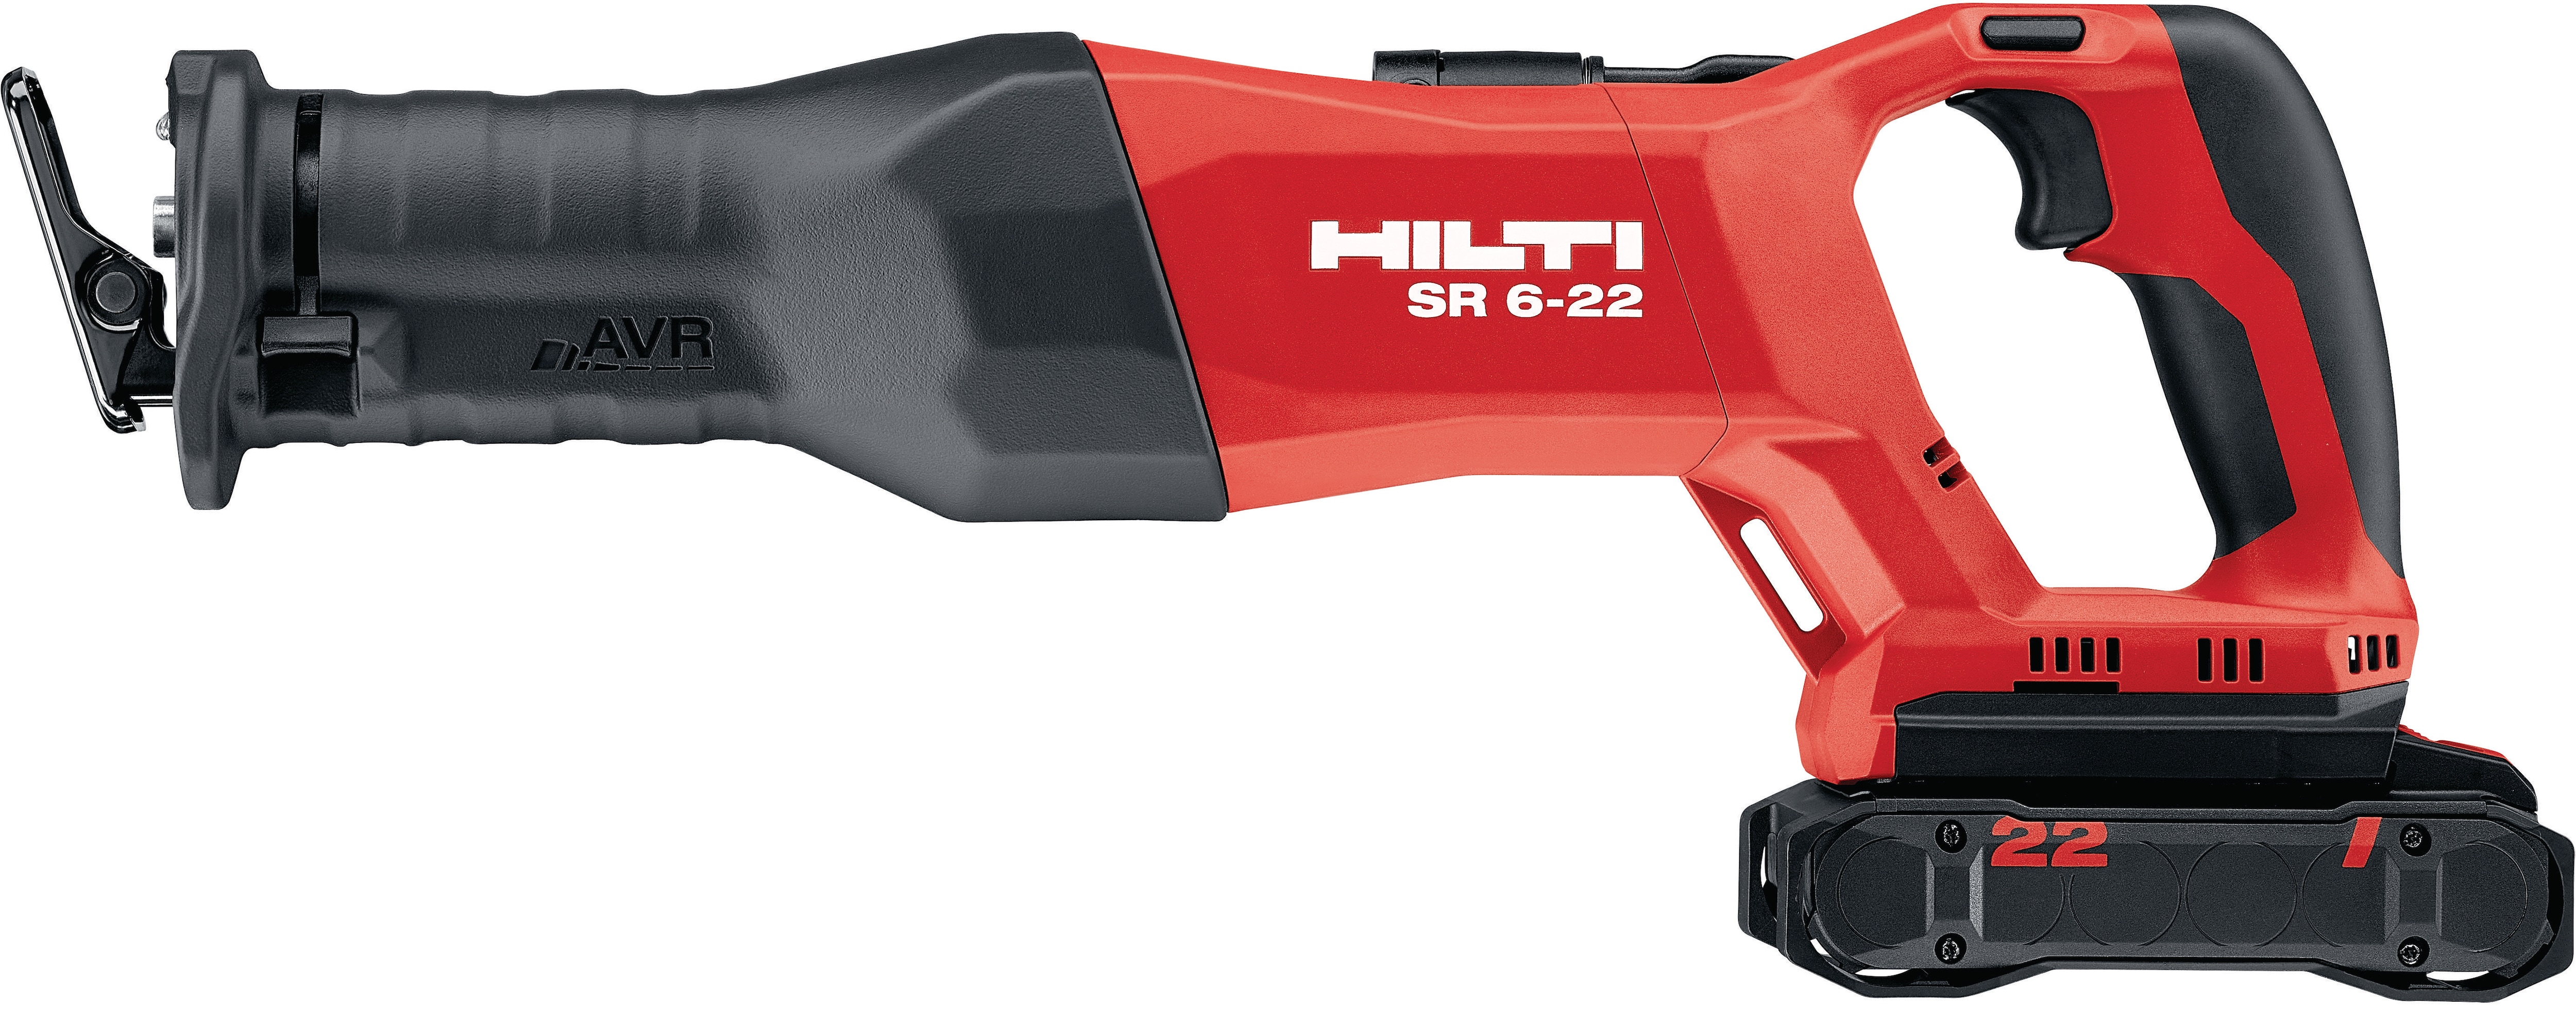 Cómo configurar y usar la sierra de sable a batería Hilti Nuron SR 6-22 